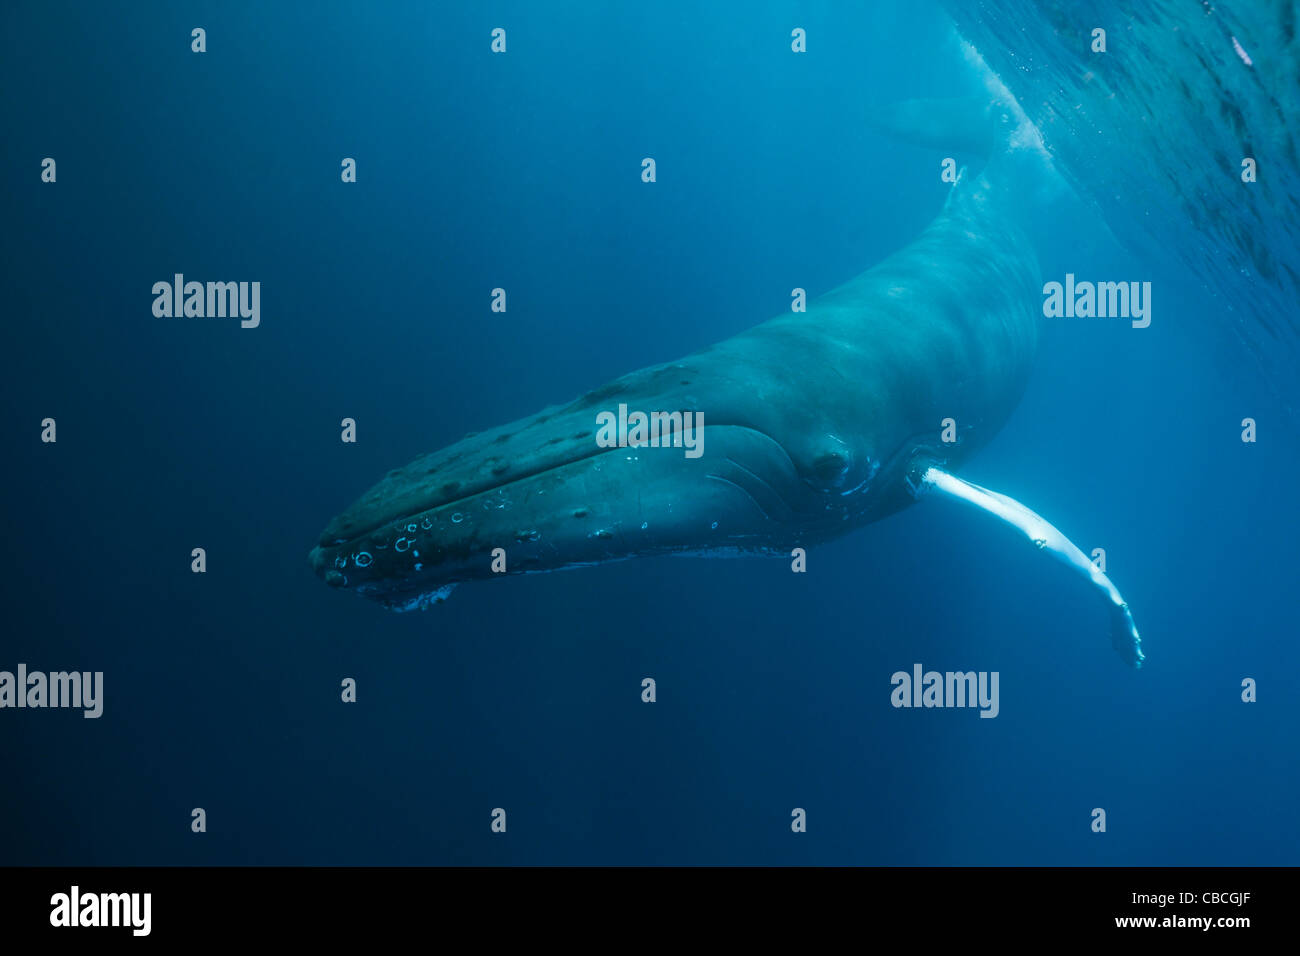 Humpback Whale, Megaptera novaeangliae, Caribbean Sea, Dominica Stock Photo